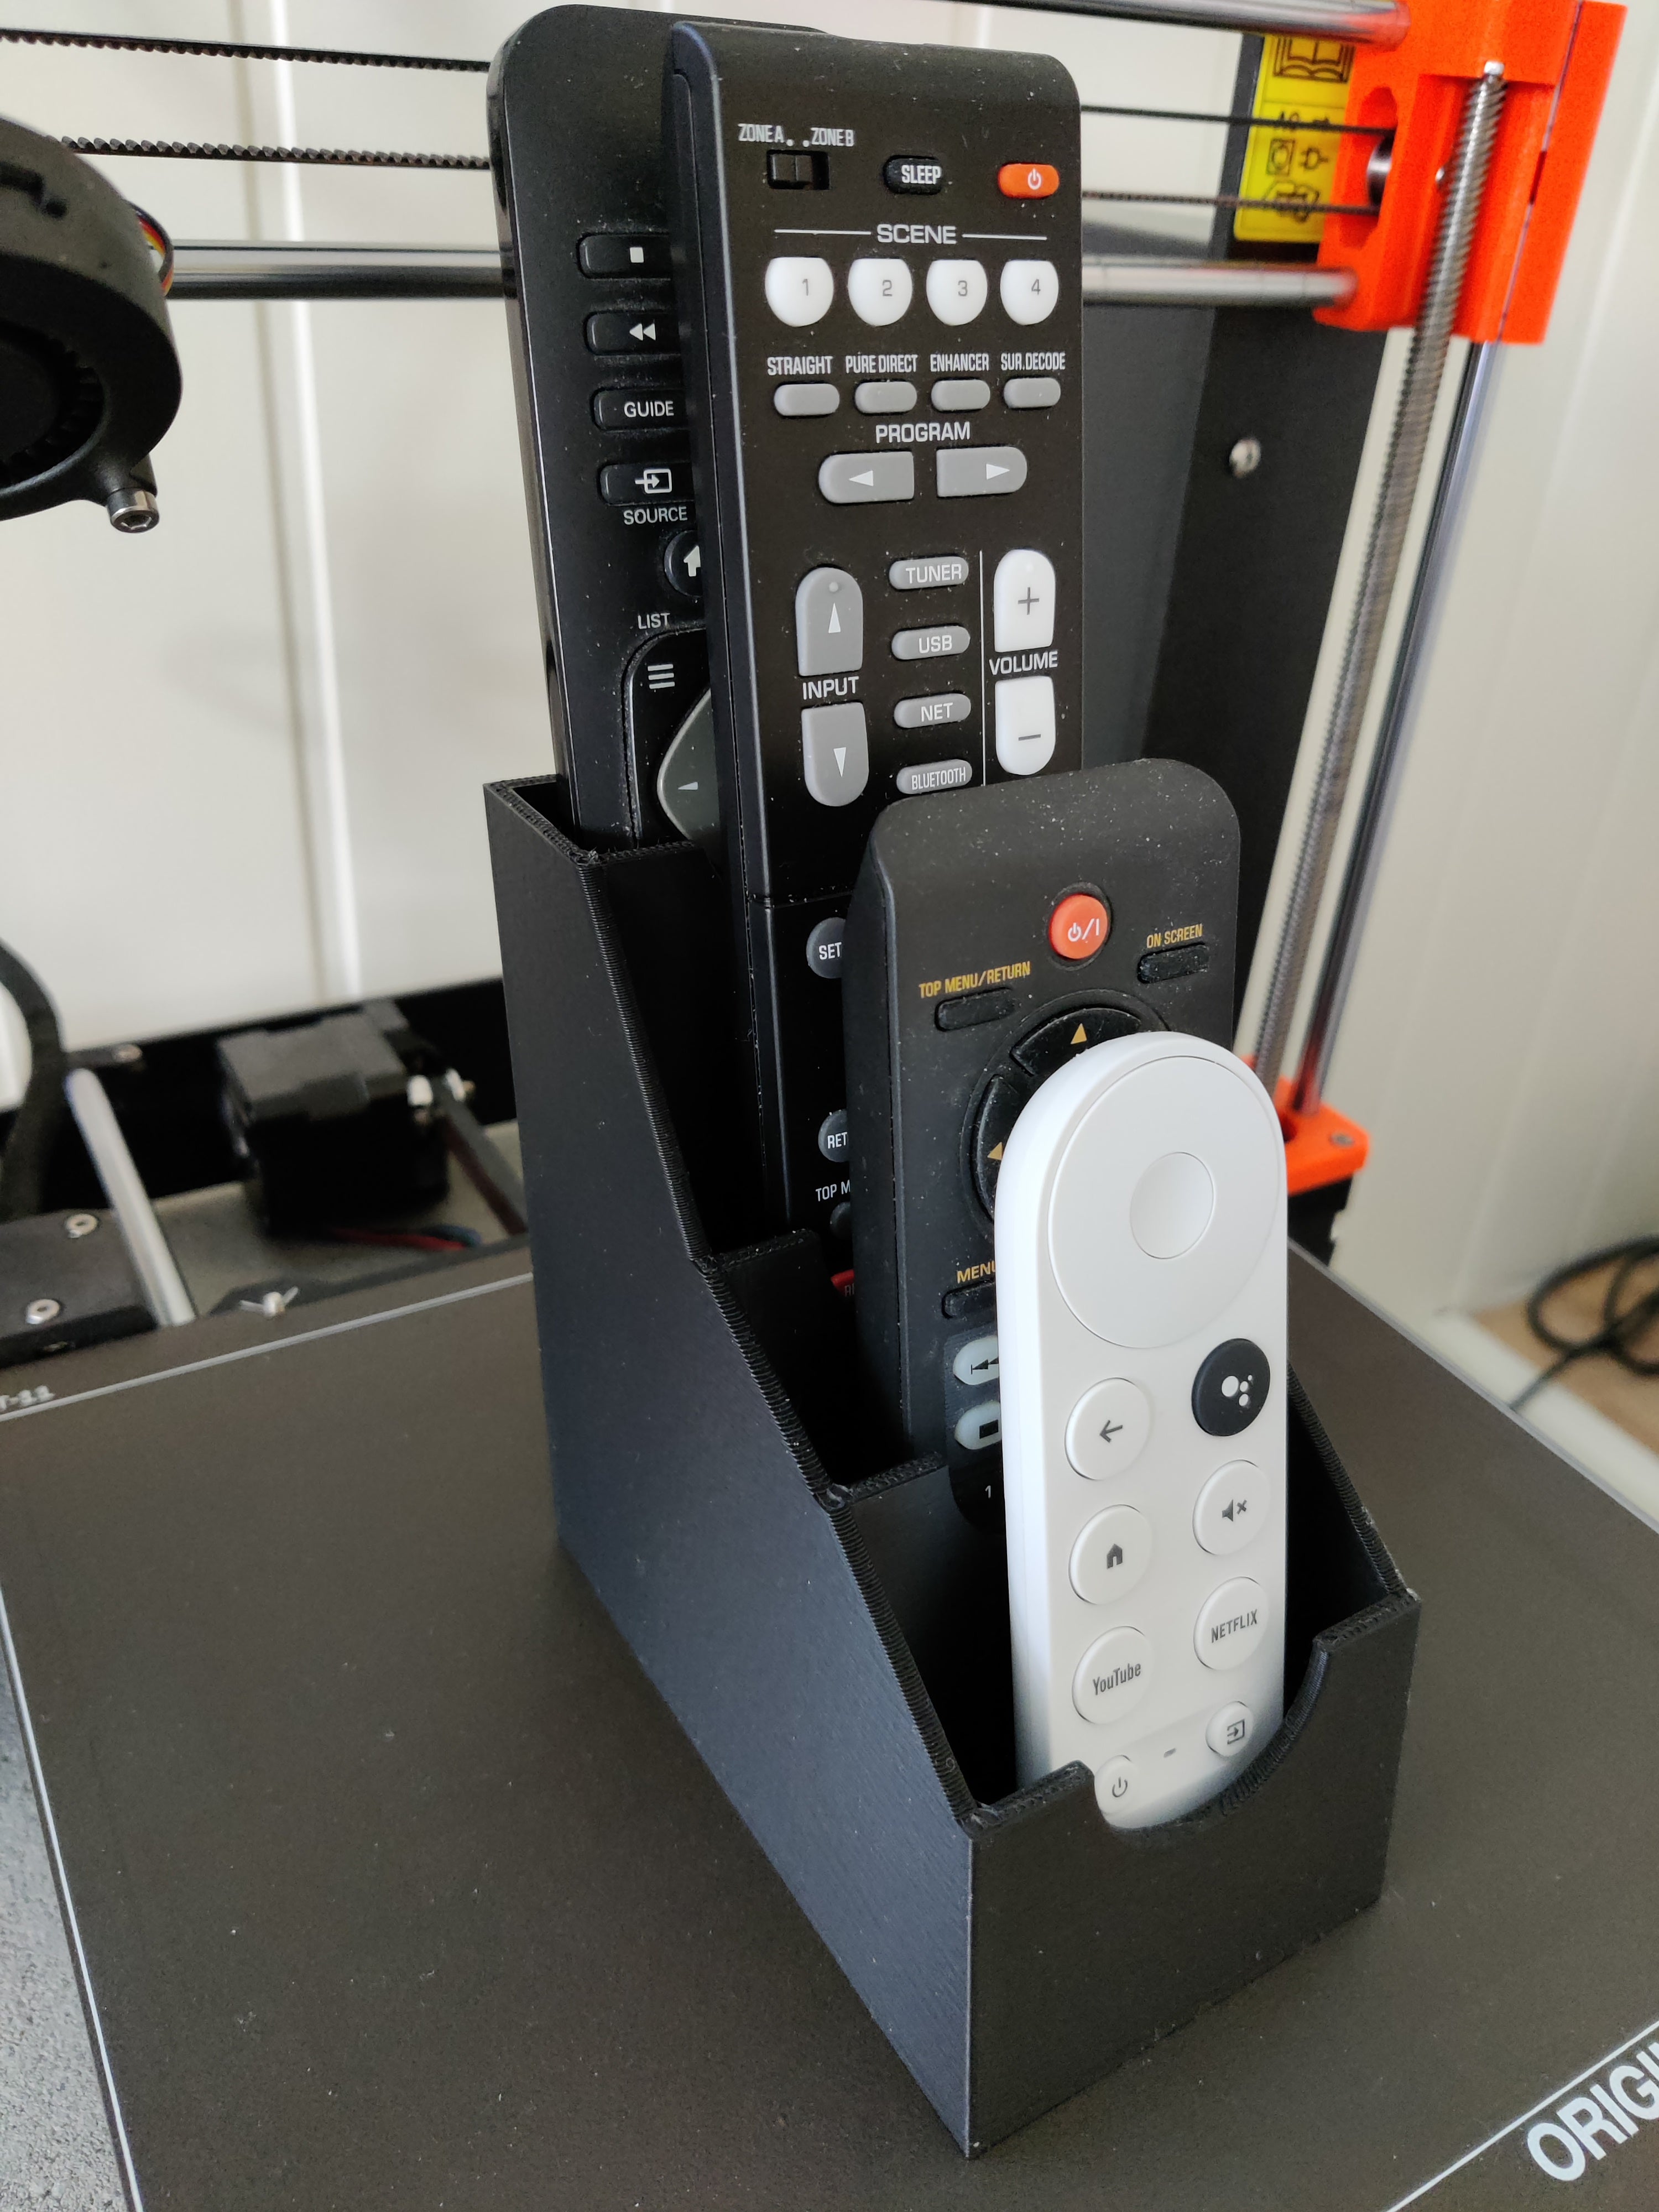 Remote Control Holder for Chromecast 4, DVD, TV and Yamaha AV receiver